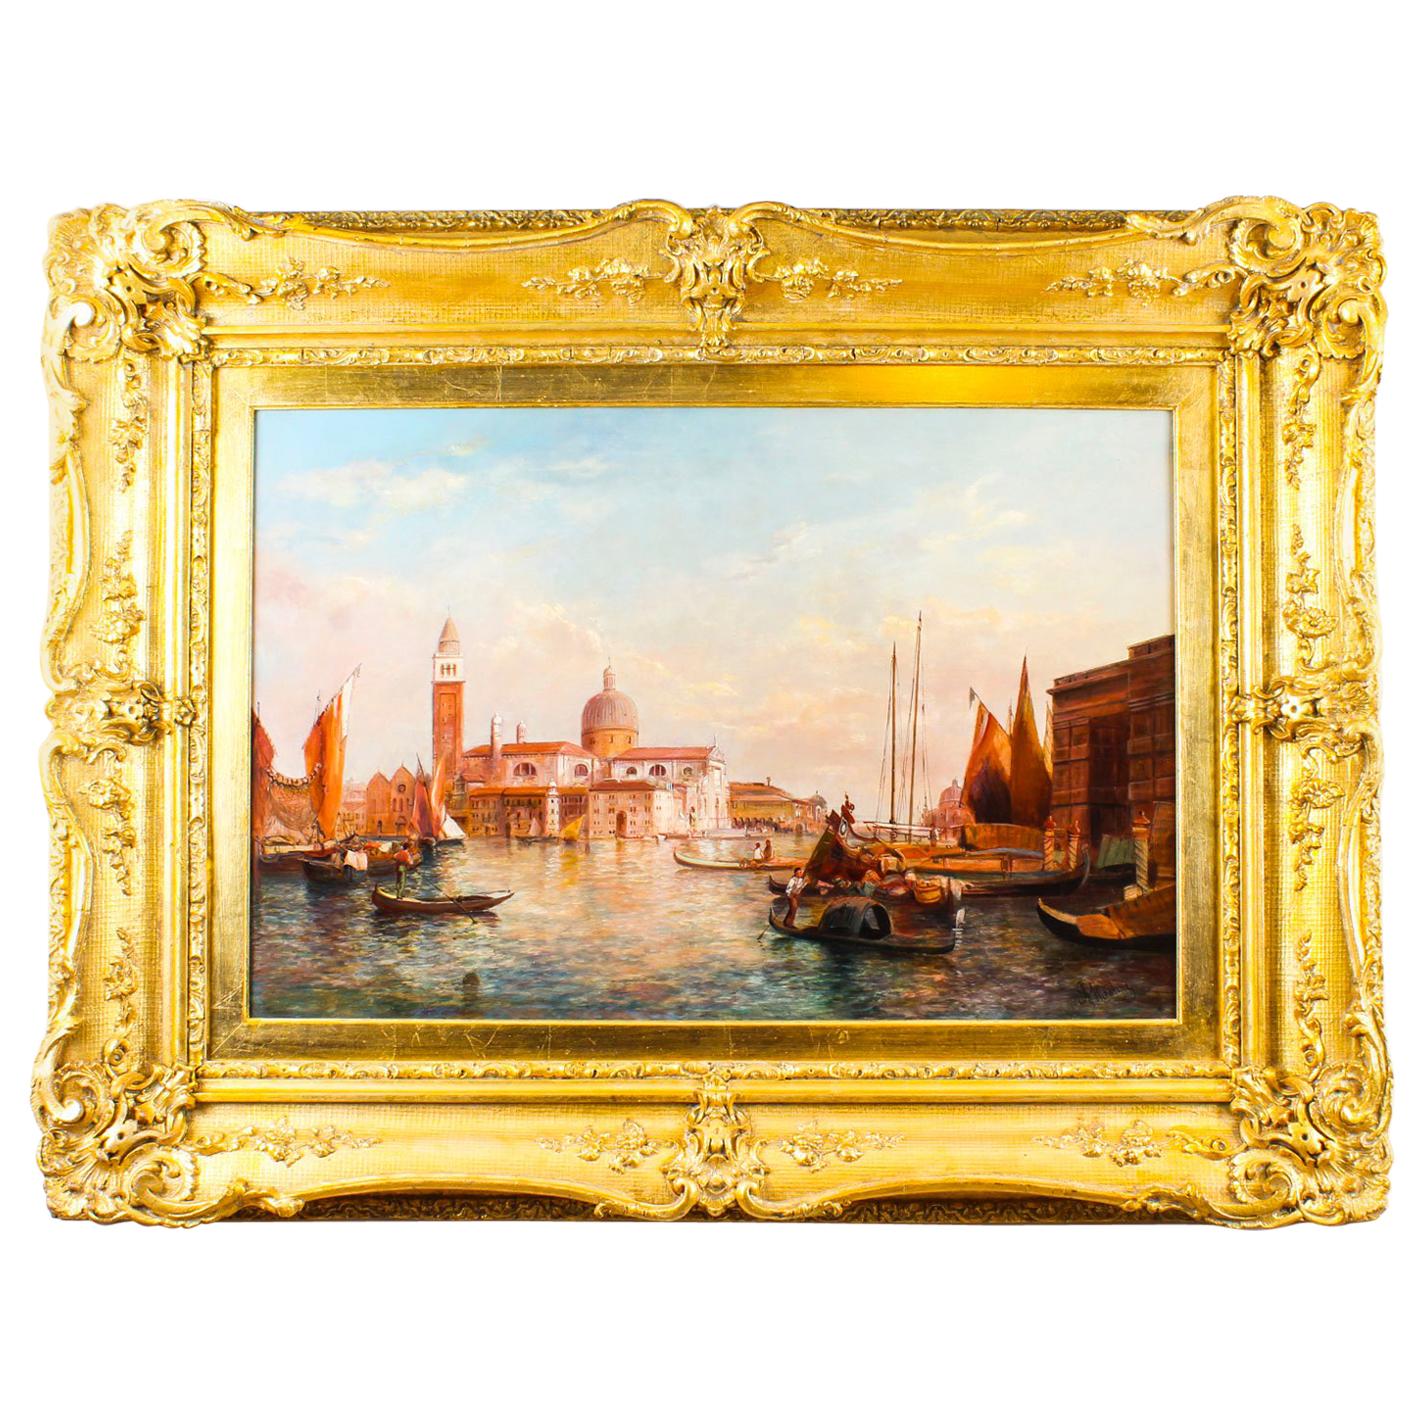 Antique Oil Painting San Giorgio Maggiore Venice Alfred Pollentine 19th Century